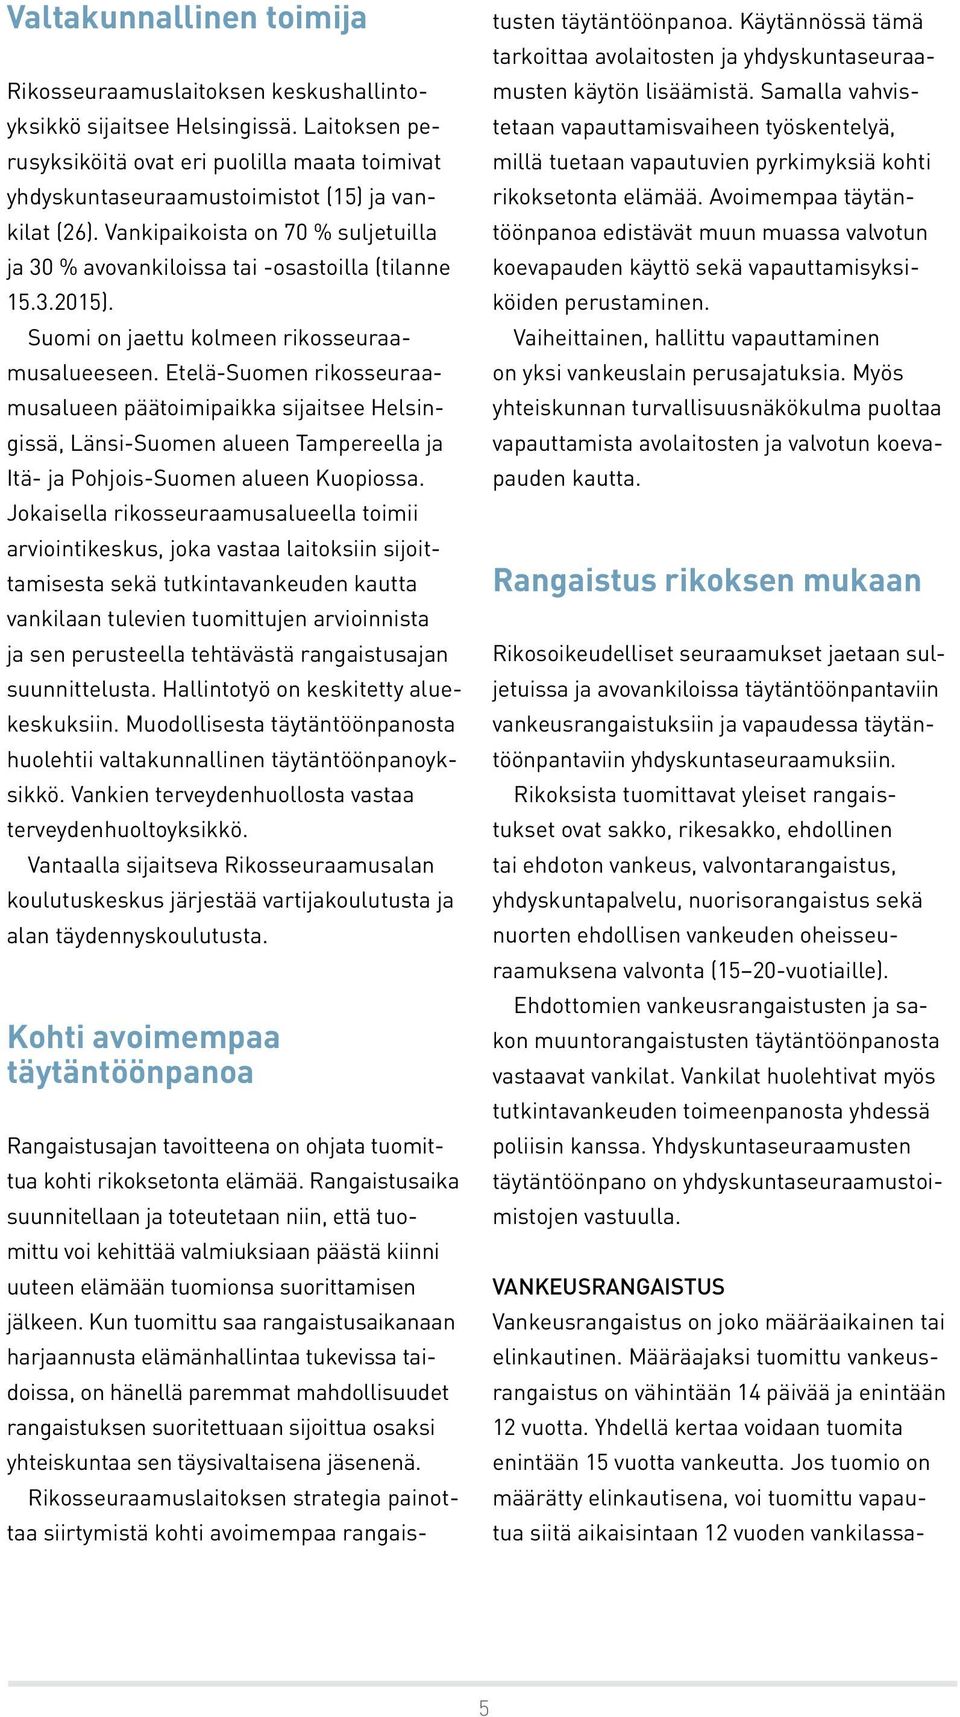 Suomi on jaettu kolmeen rikosseuraamusalueeseen. Etelä-Suomen rikosseuraamusalueen päätoimipaikka sijaitsee Helsingissä, Länsi-Suomen alueen Tampereella ja Itä- ja Pohjois-Suomen alueen Kuopiossa.